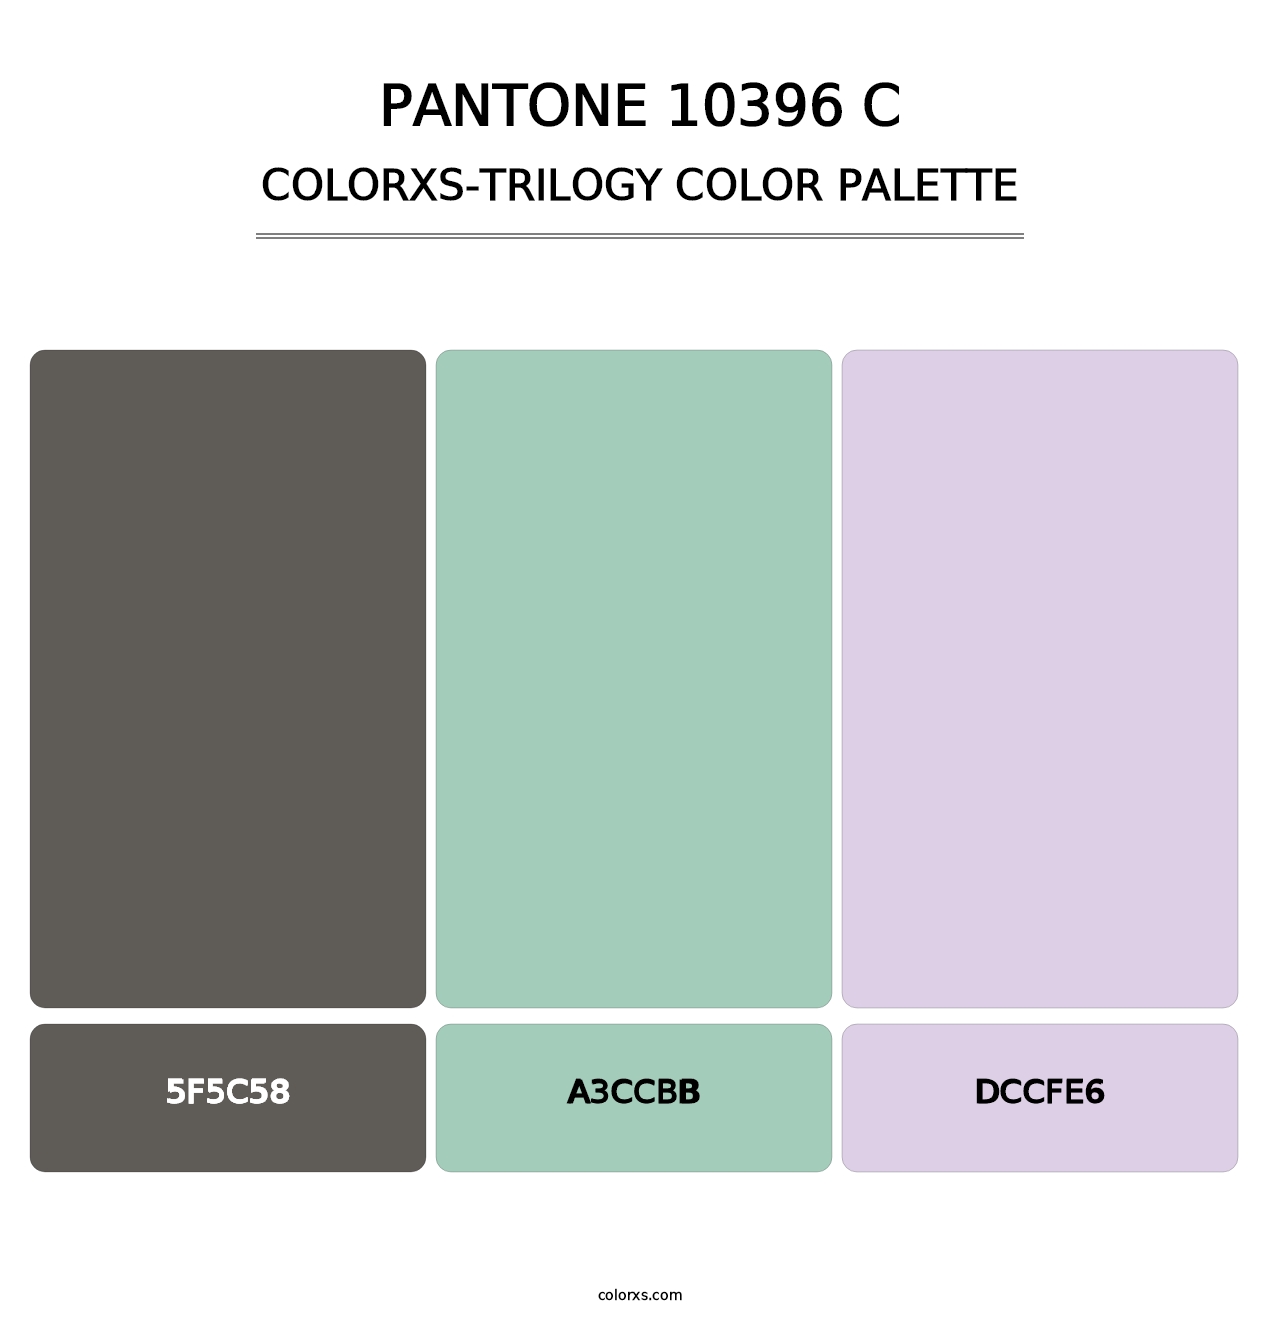 PANTONE 10396 C - Colorxs Trilogy Palette